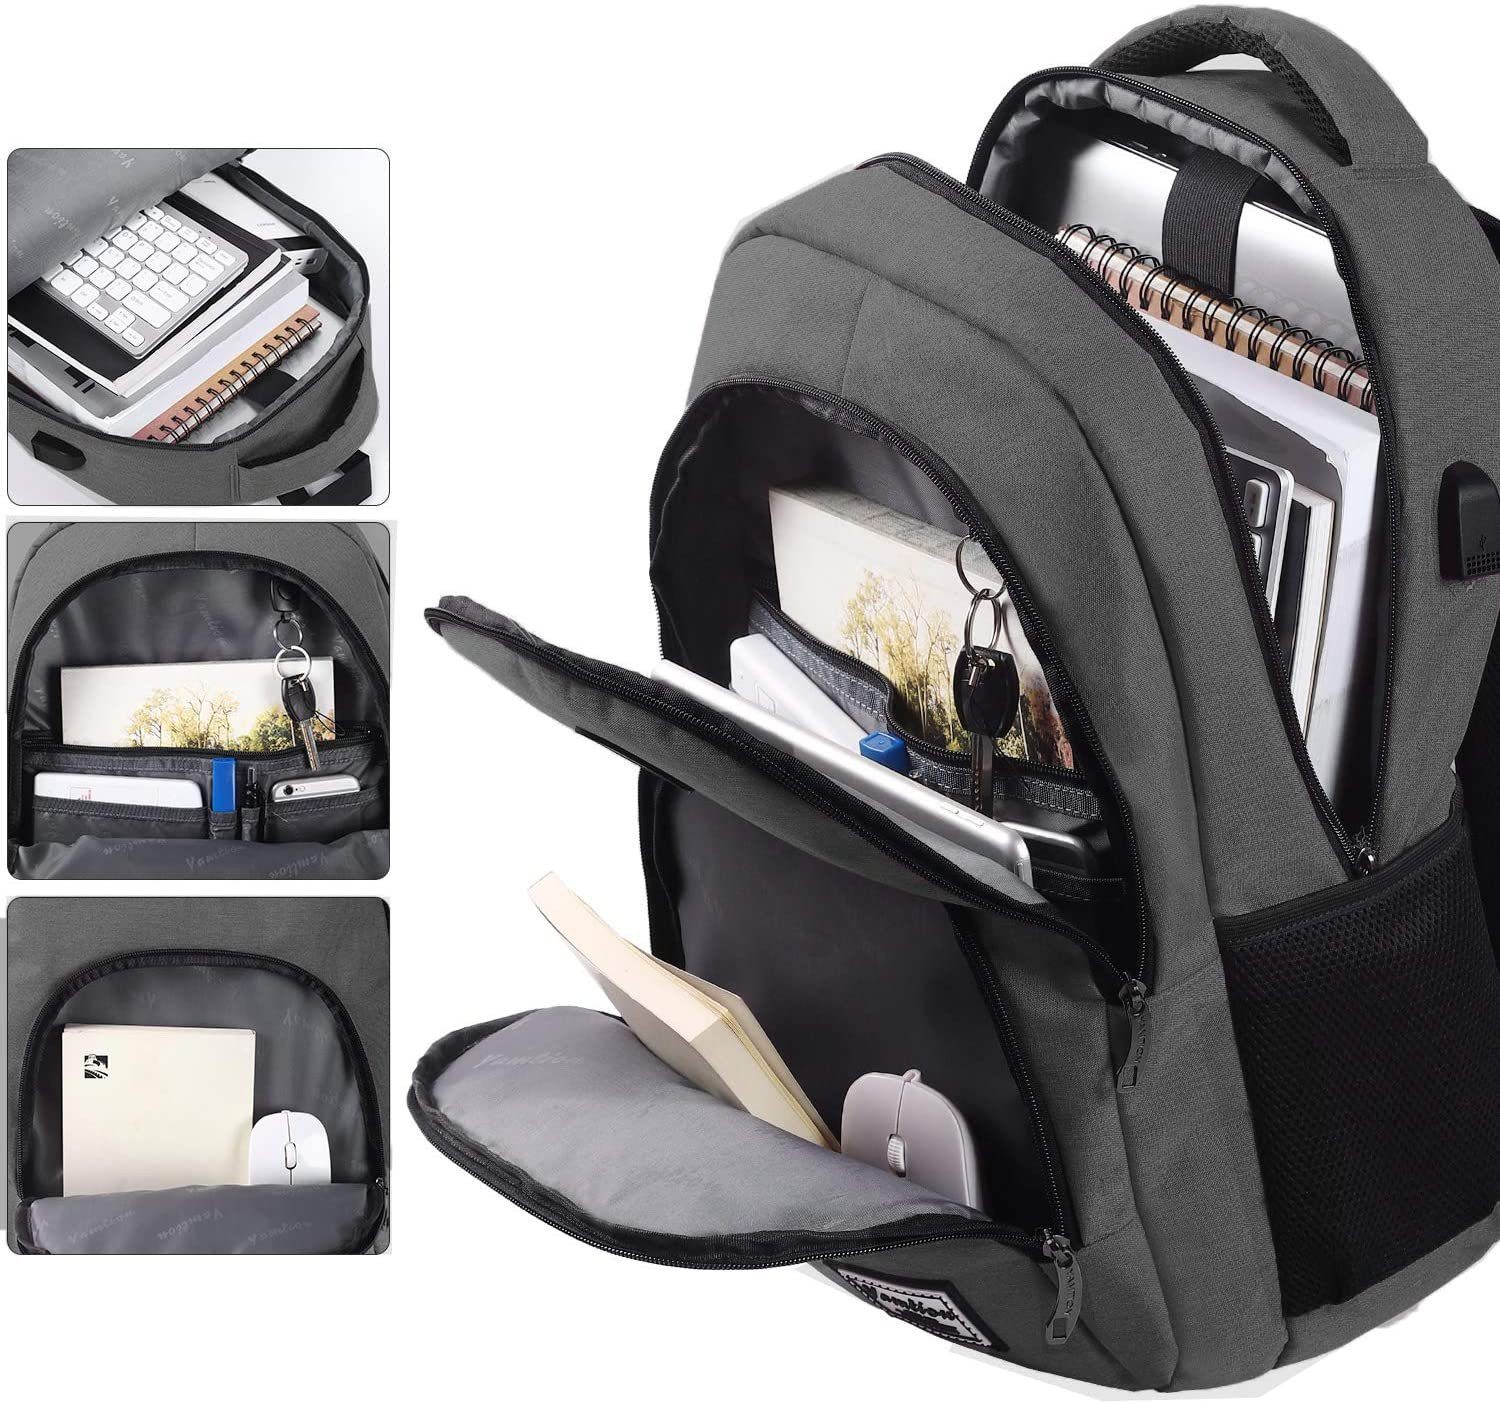 Rucksack Laptop Backpack Herren Damen Daypack Grosse Kapazität Business Wasserdicht Multifunktion mit USB Ladeanschluss Schulrucksack Tagesrucksack 